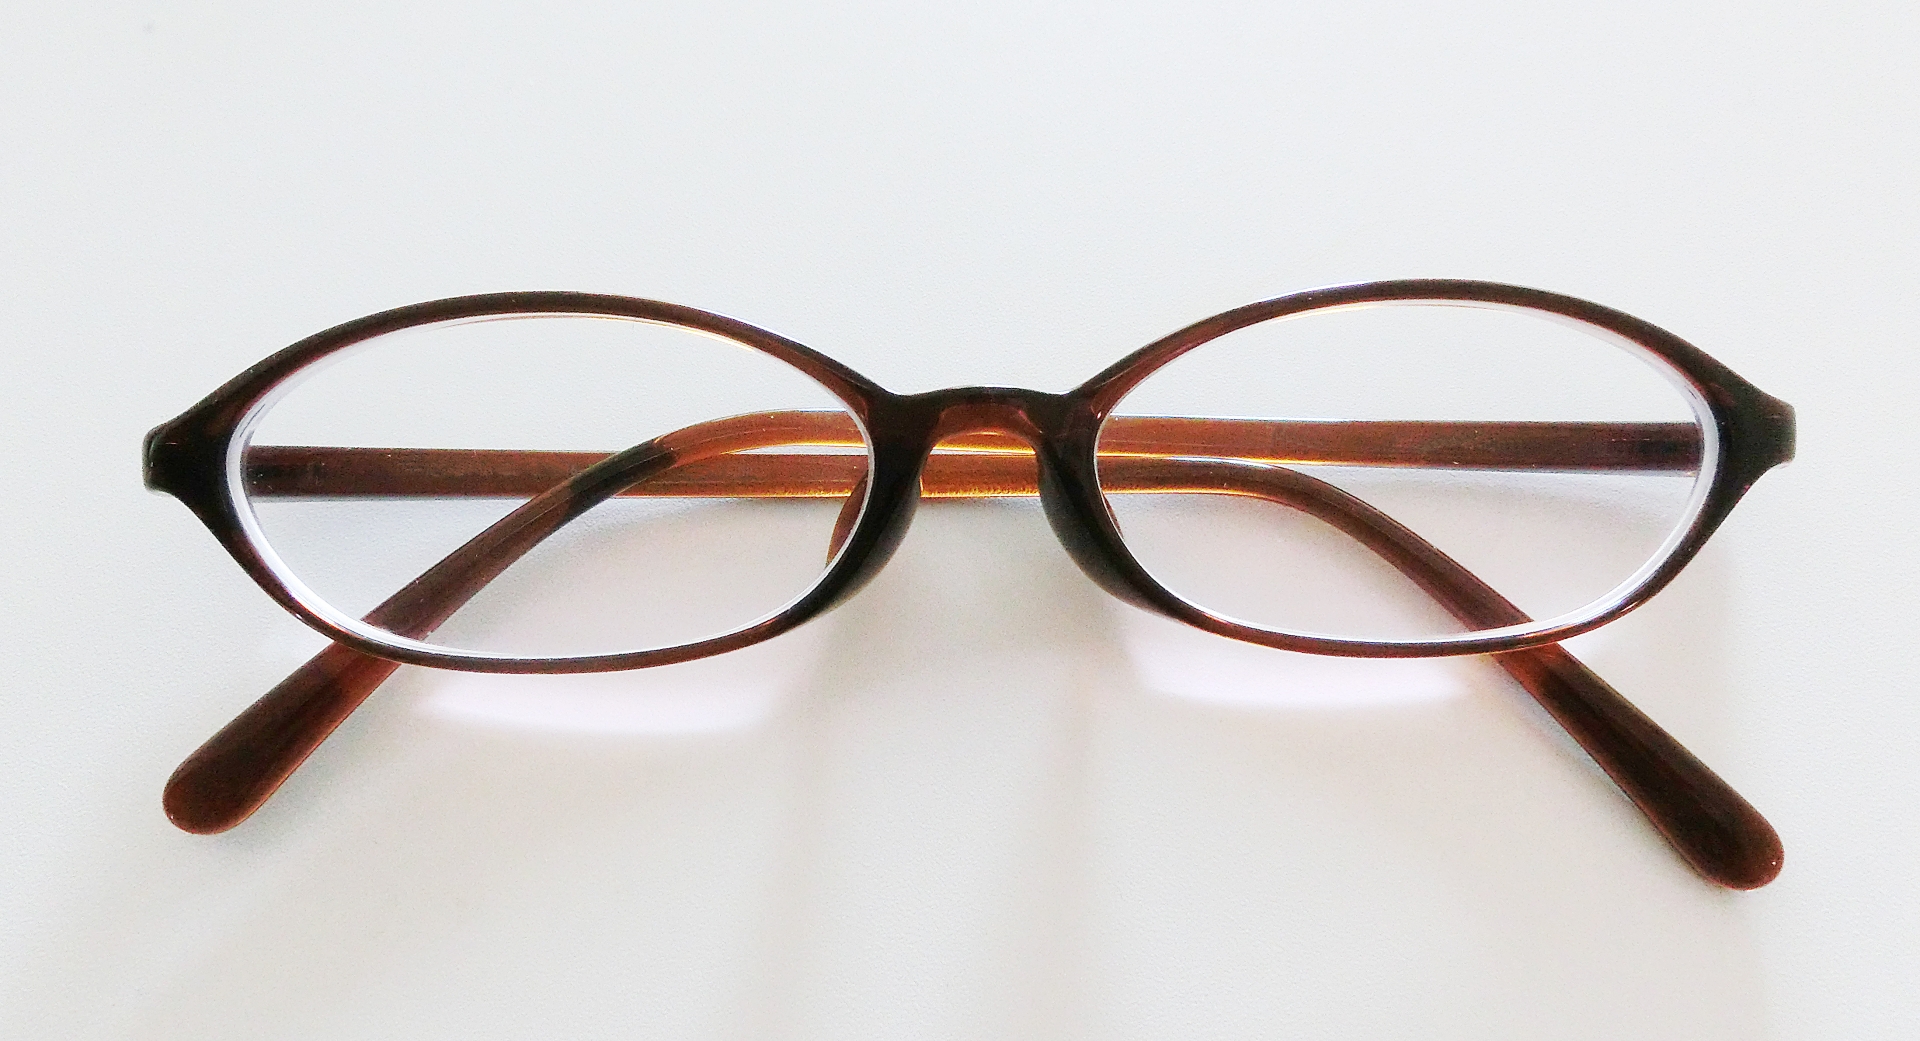 メガネの縁がグレーの場合の印象と感想。似合うメガネの選び方